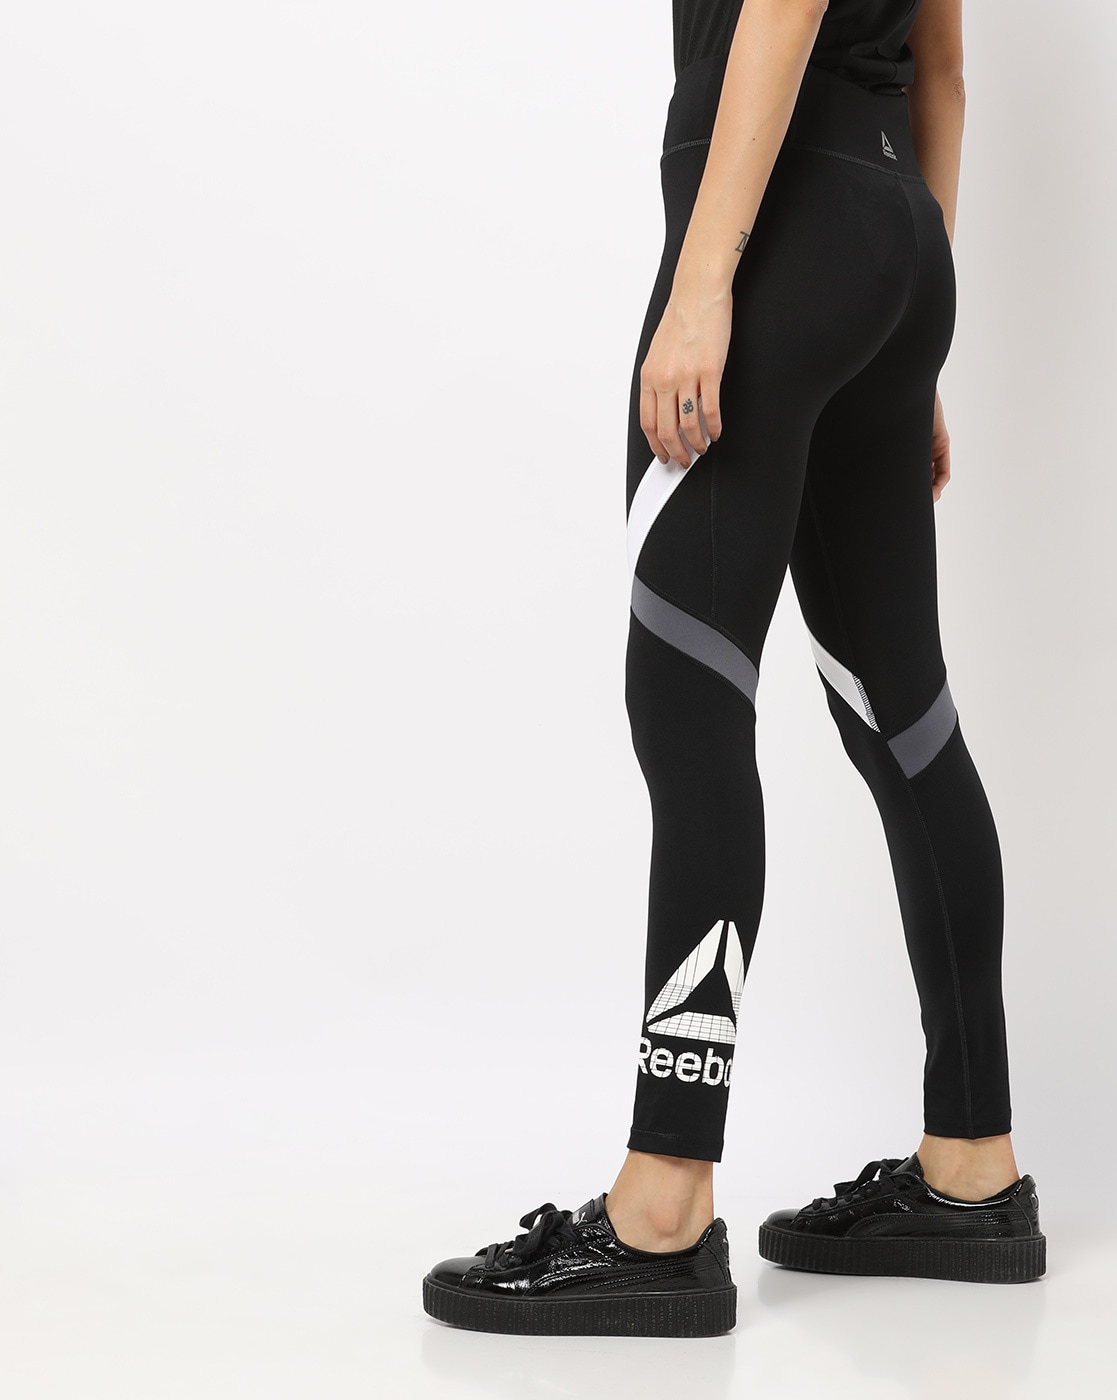 reebok women's sports leggings